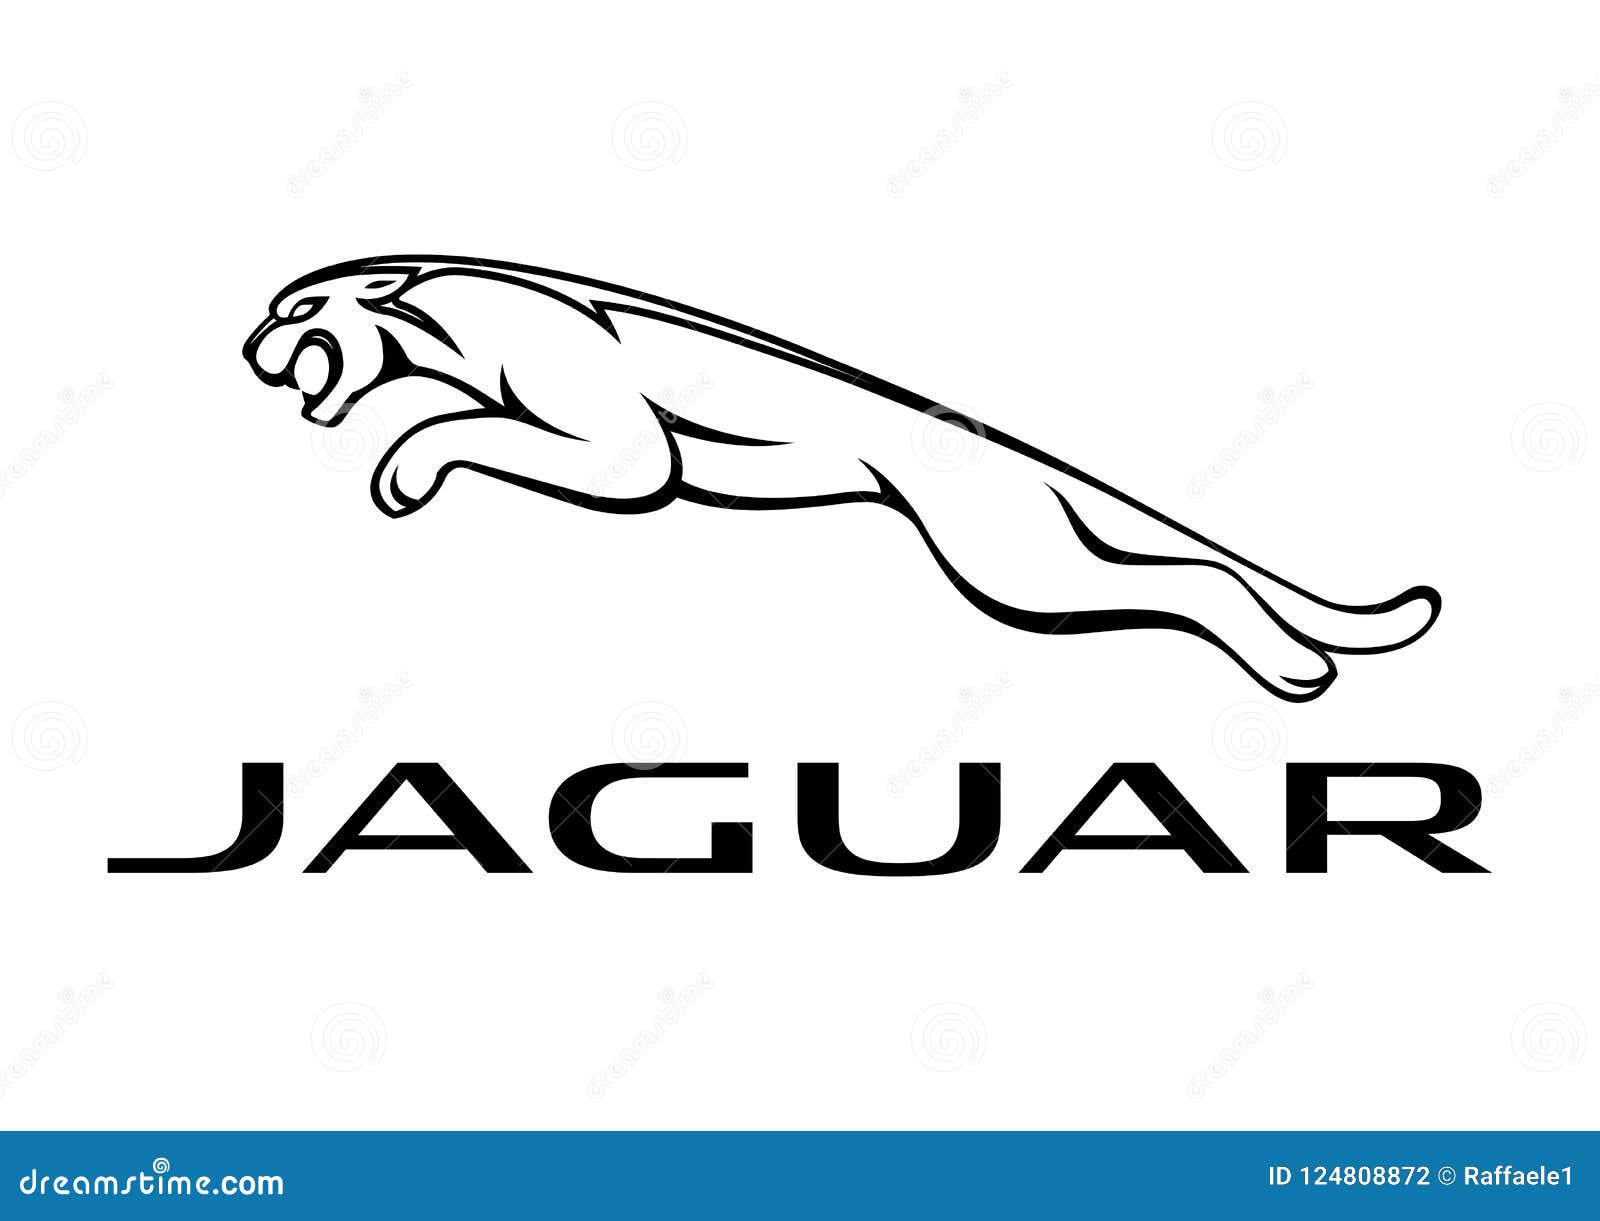 Jaguar Logo Stock Illustrations  4346 Jaguar Logo Stock Illustrations  Vectors  Clipart  Dreamstime